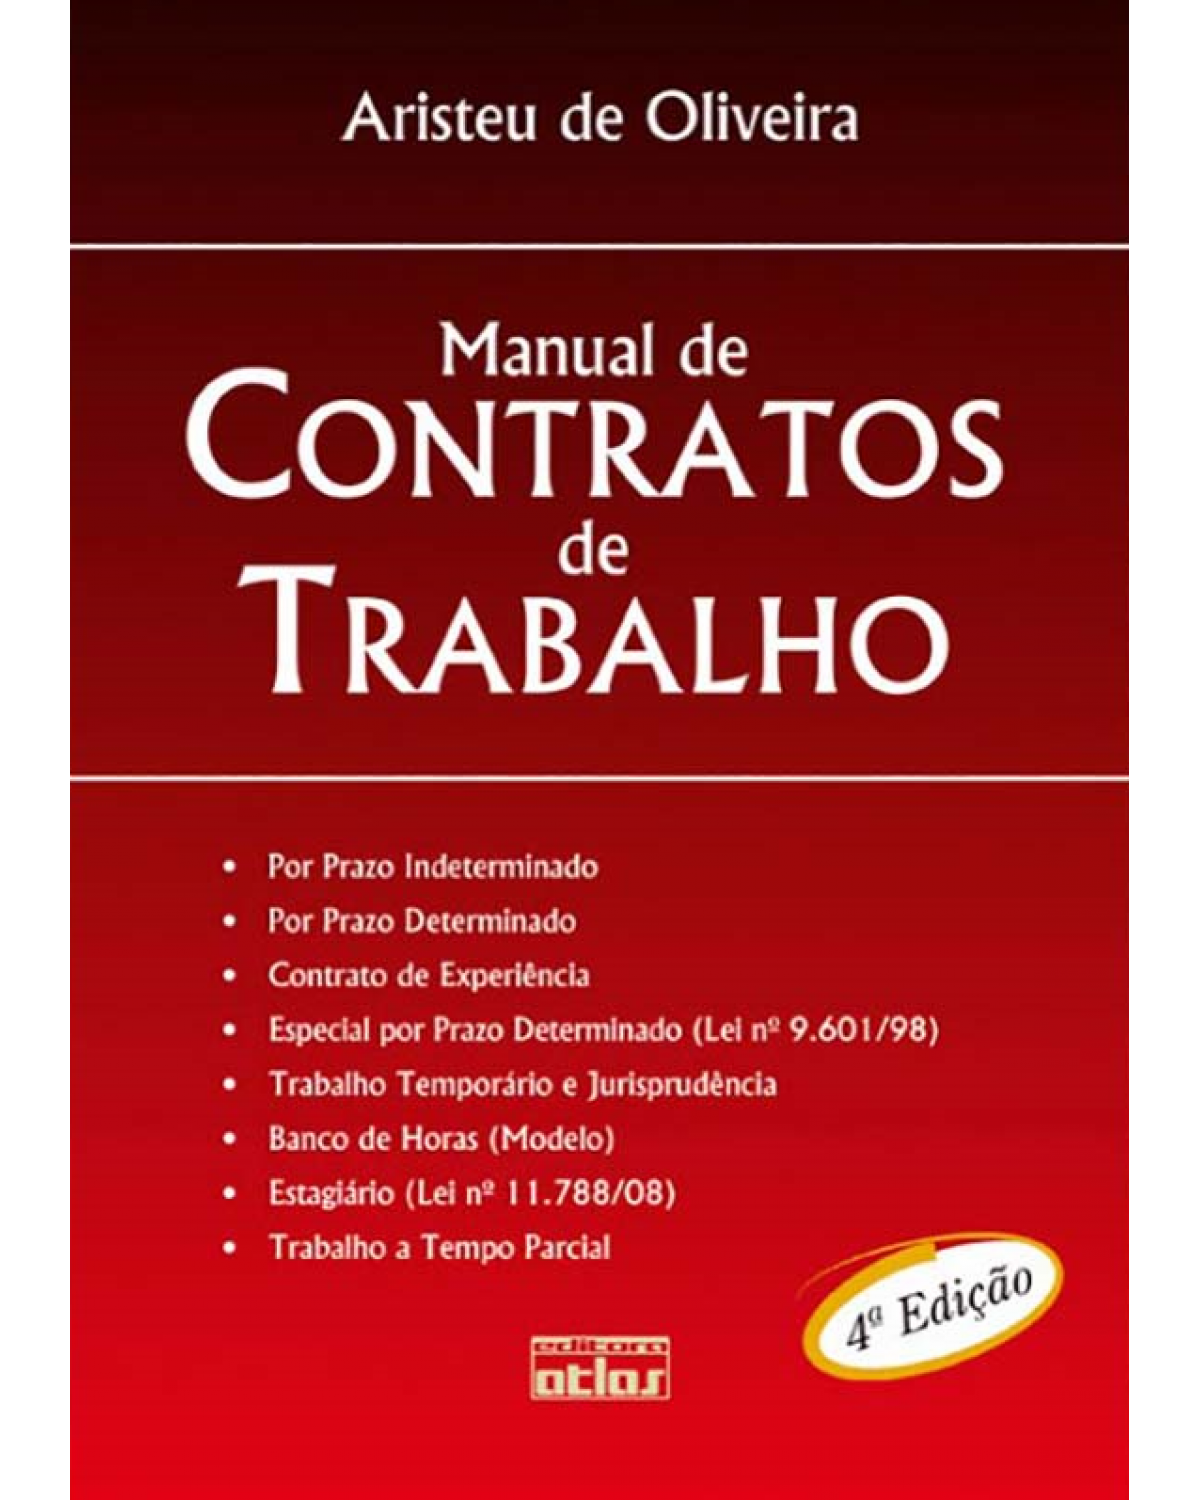 Manual de contratos de trabalho - 4ª Edição | 2009